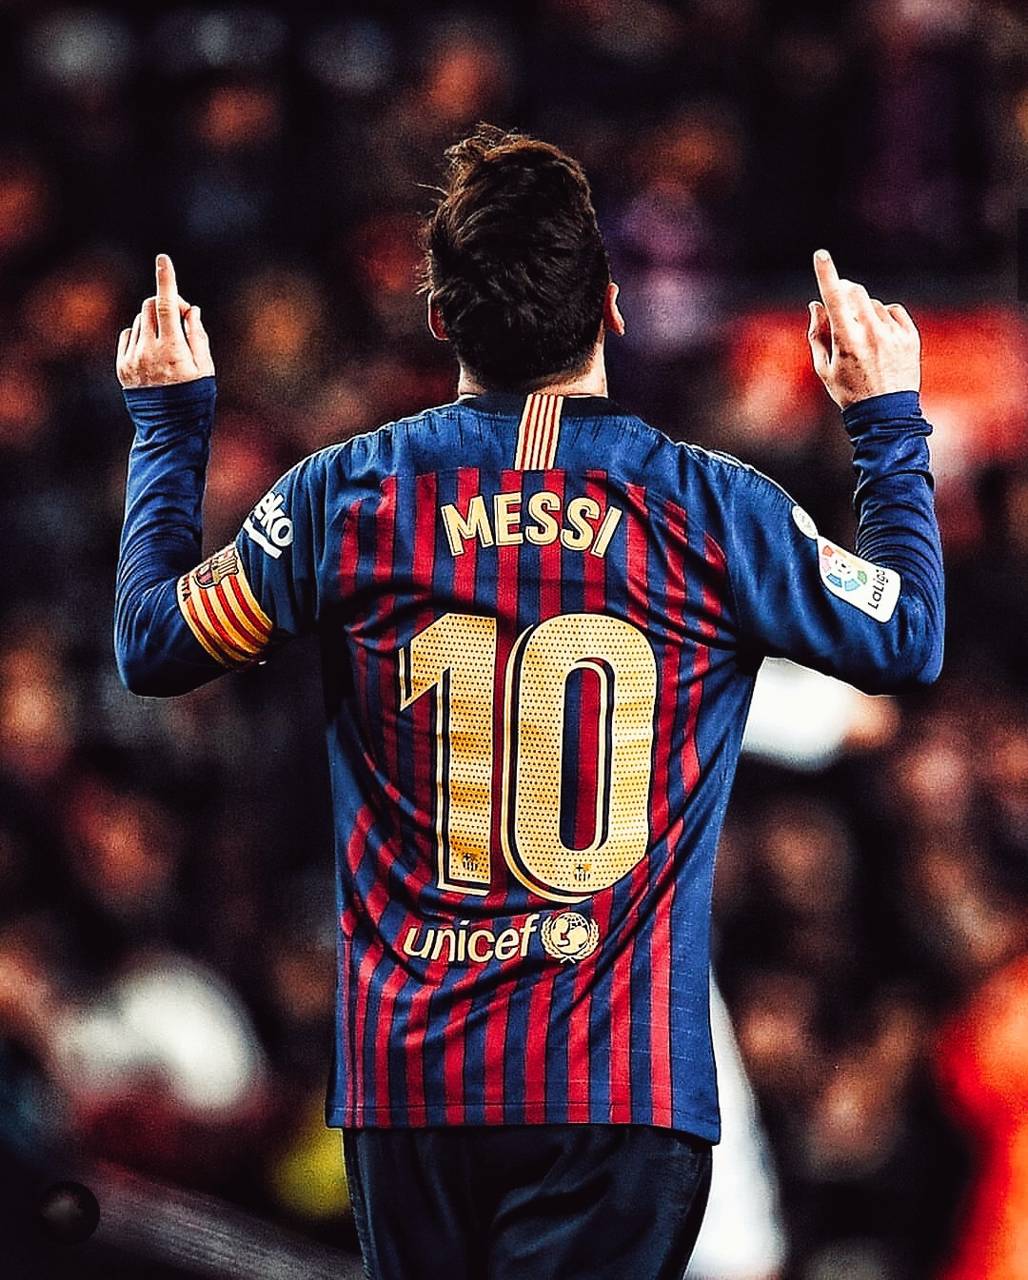 Nếu bạn là fan của Lionel Messi, hãy xem hình nền Lionel Messi sẽ làm cho màn hình của bạn trở nên đẹp hơn bao giờ hết. Hình nền này sẽ chứa đựng niềm đam mê và nhiệt huyết bóng đá của chàng trai Argentina.